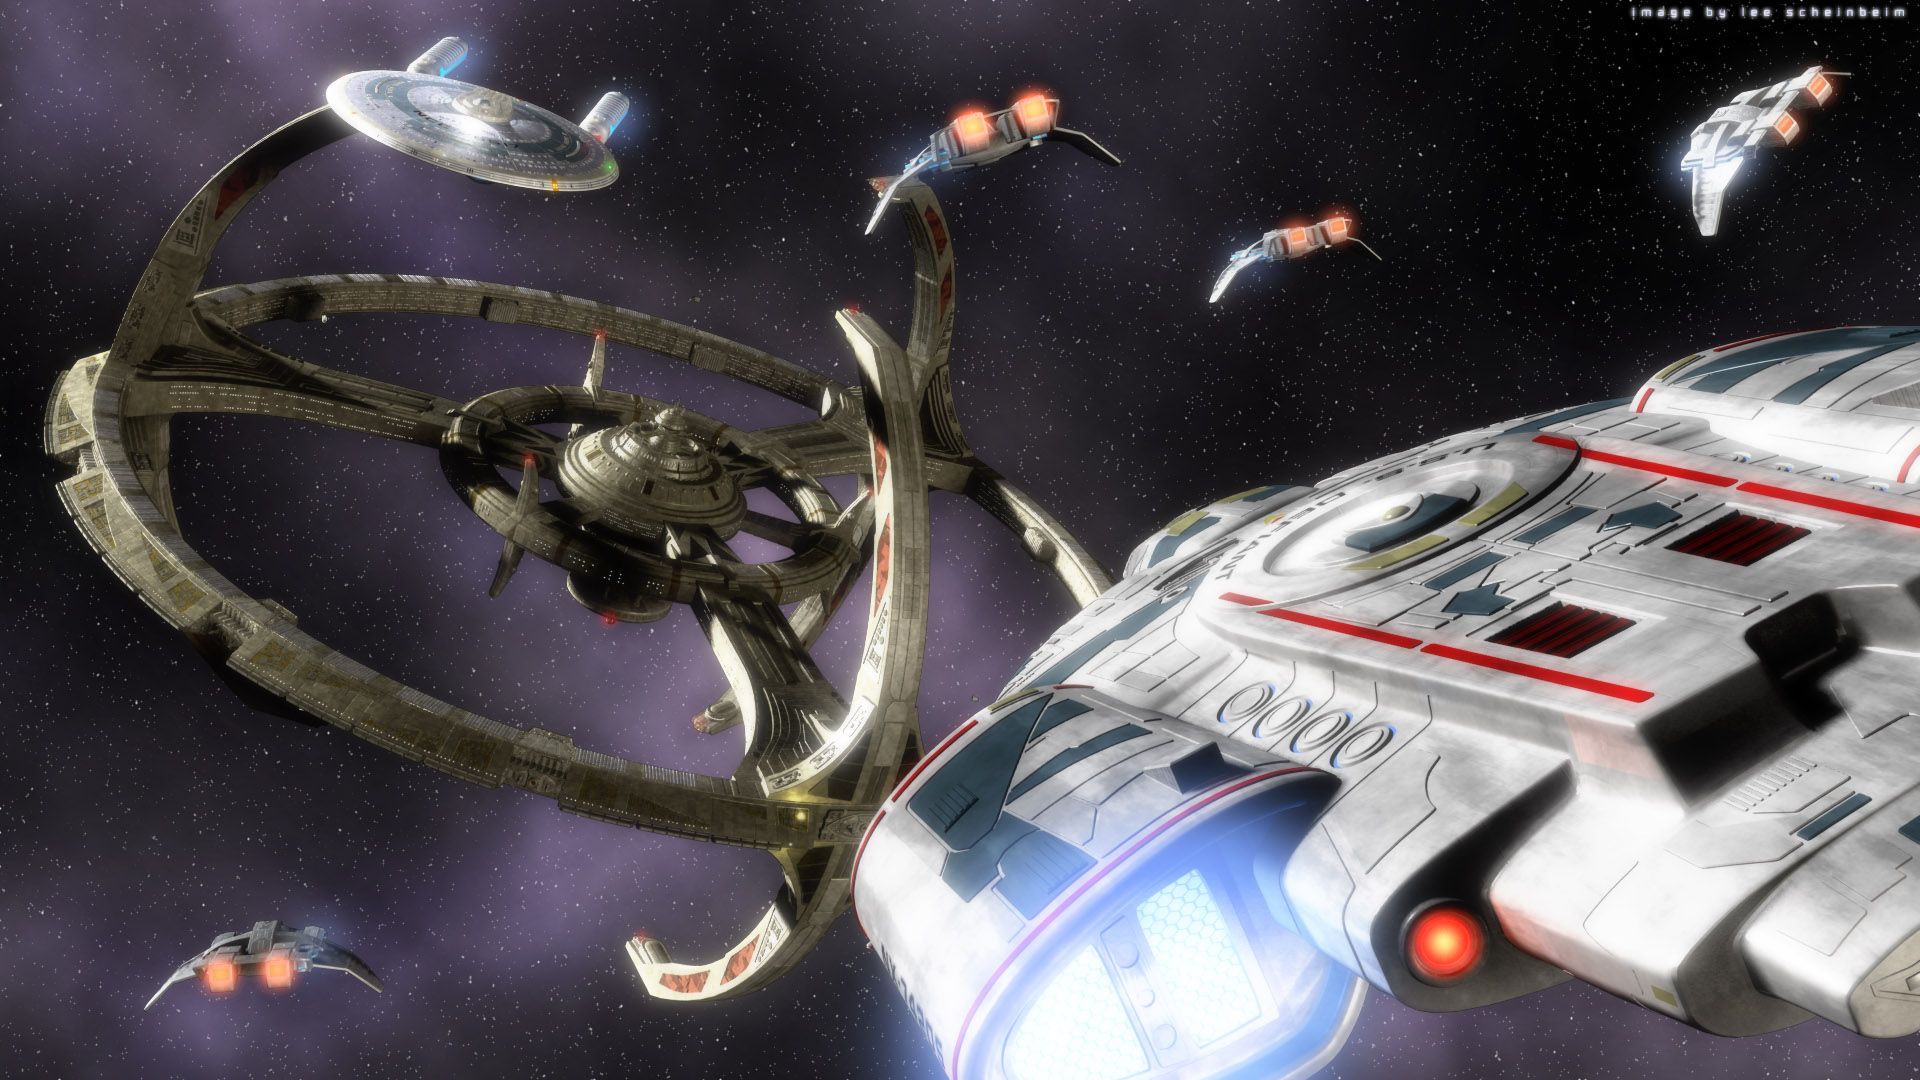 Tàu Uss Defiant Nx chắc chắn là một trong những tàu thần kỳ nhất của Star Trek Deep Space Nine. Chiêm ngưỡng vẻ đẹp và sự mạnh mẽ của nó thông qua bộ sưu tập hình ảnh được chúng tôi tổng hợp sẵn. Hãy cùng khám phá và tận hưởng nhé!